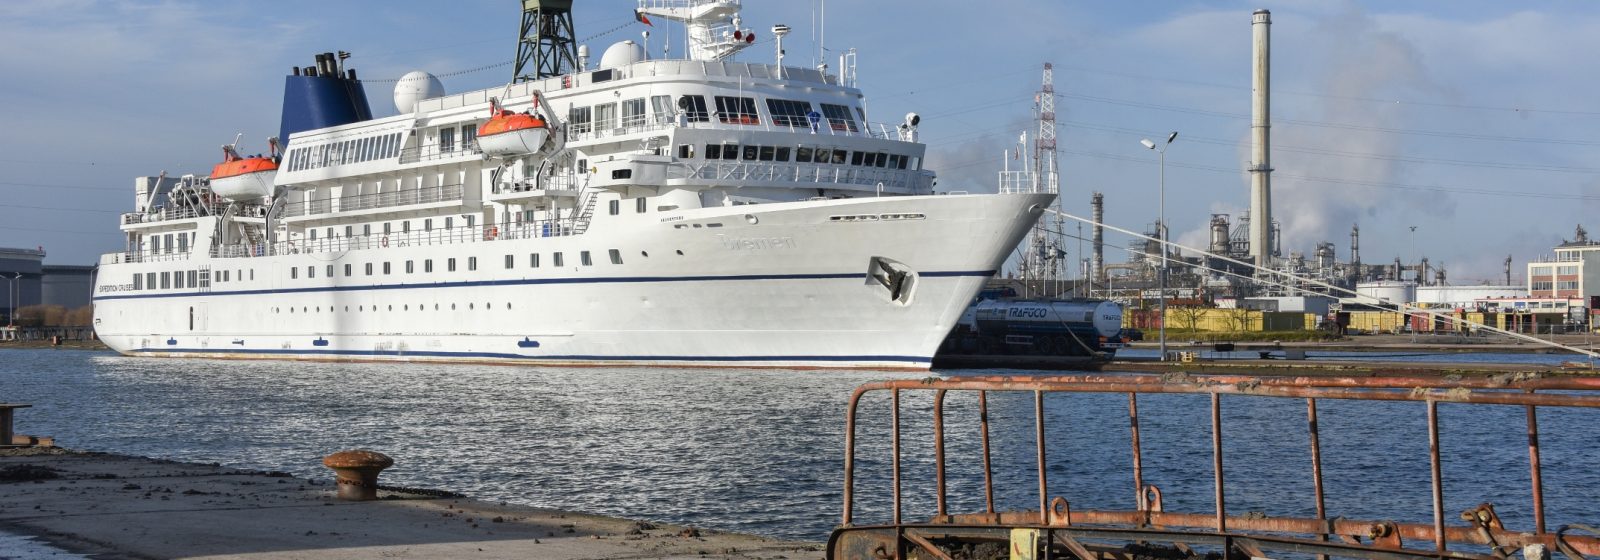 Cruiseschip MS Seaventure bij EDR Antwerp Shipyard